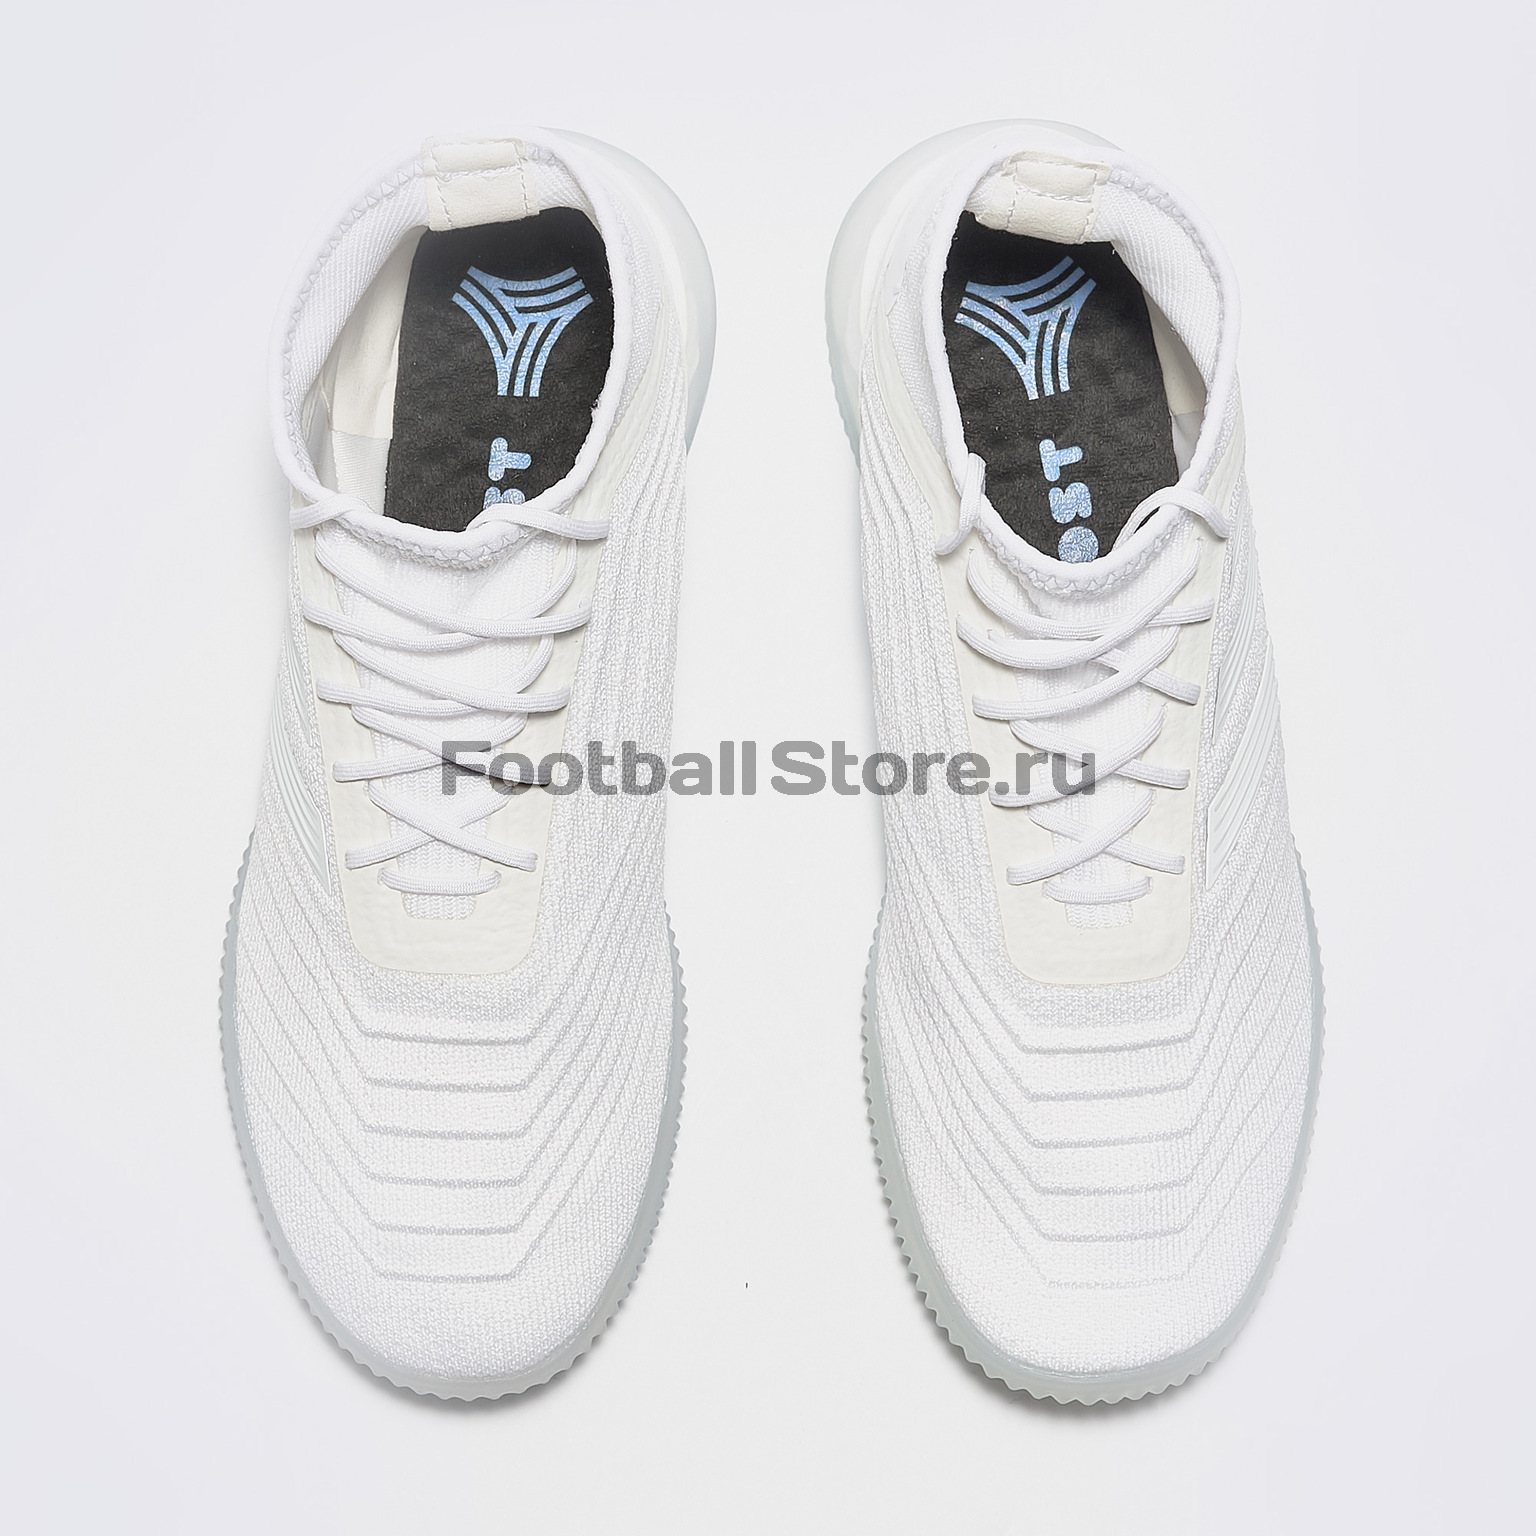 Футбольная обувь Adidas Predator 19.1 TR BC0556